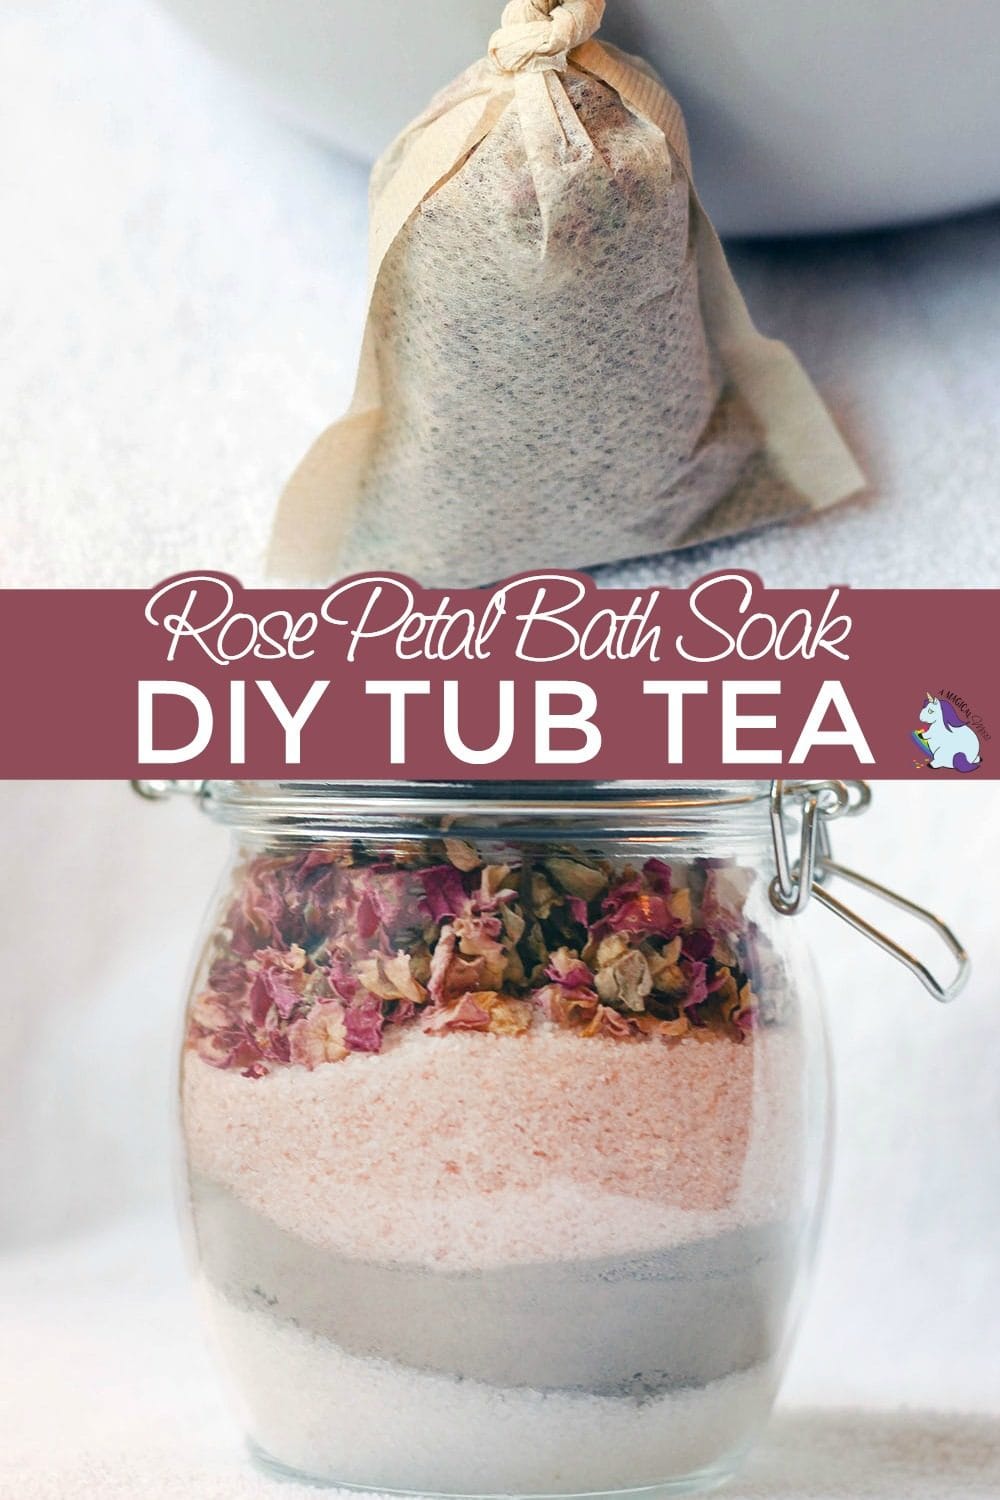 Rose petal bath soak and a tea bag full of tub tea